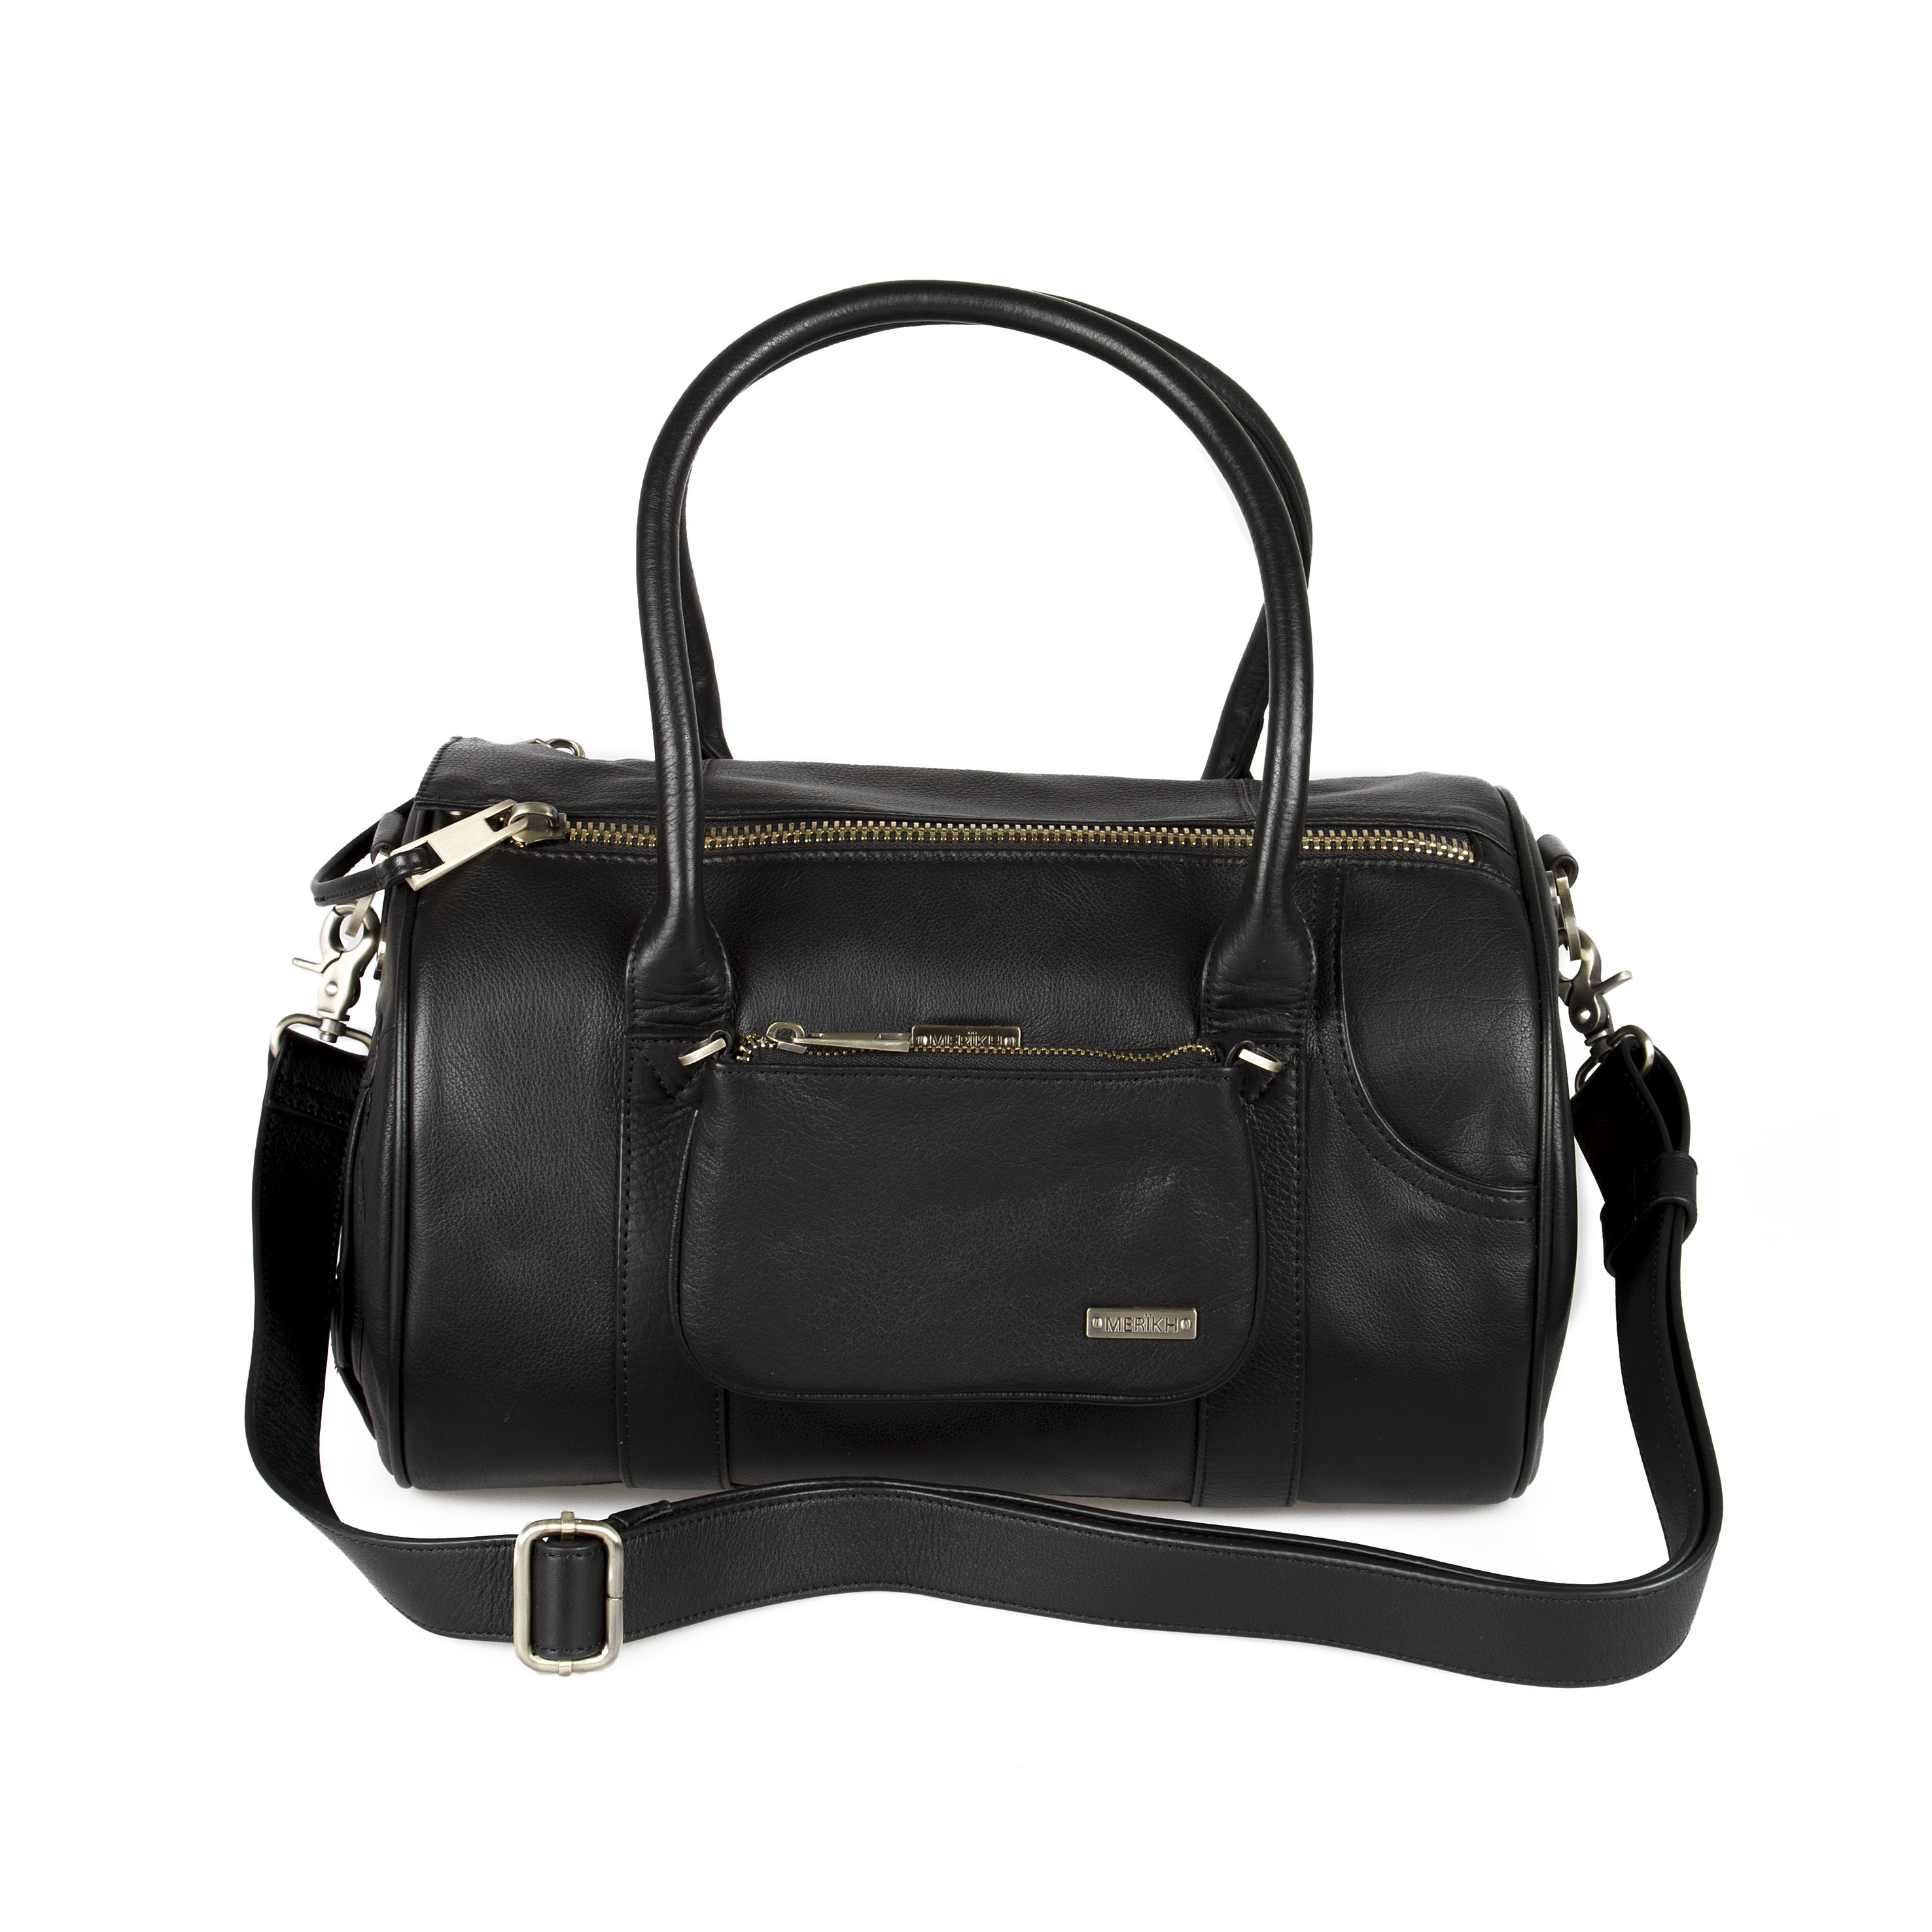 Pet Carrier S + Multi purse – Leather – Black | MERÏKH bags ...